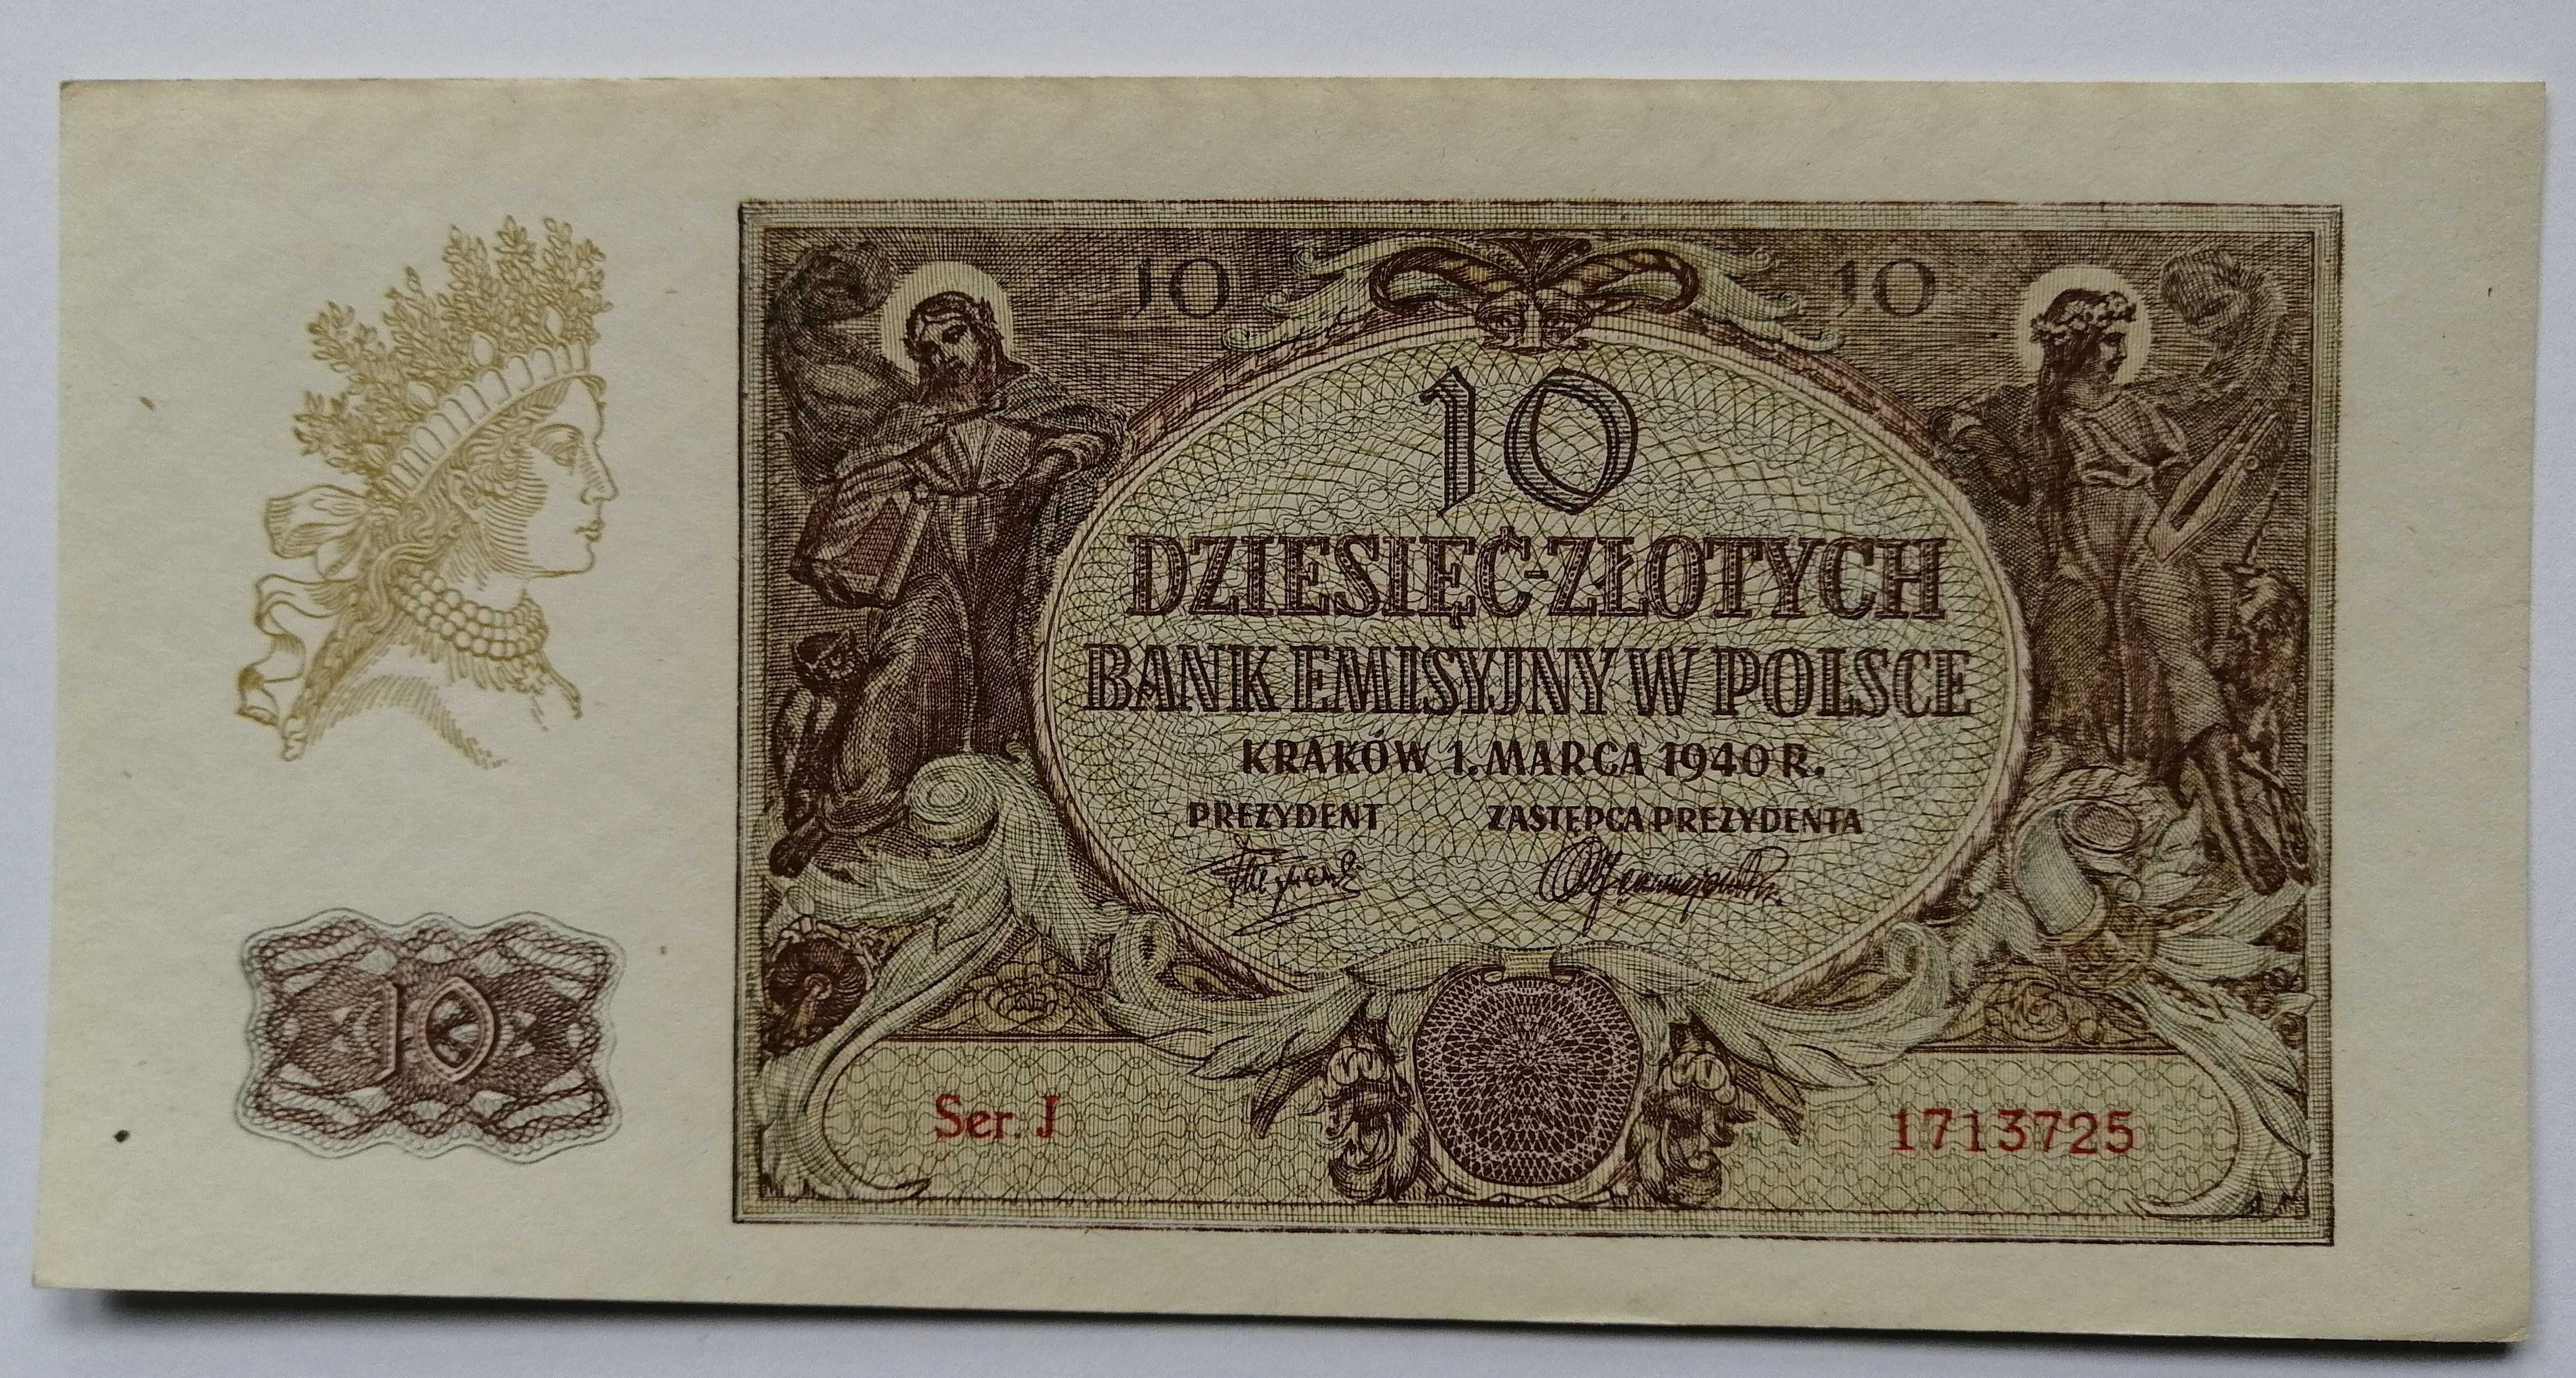 Banknot Polska - 10 złotych 1940 rok.Ser. J ( z paczki bankowej )